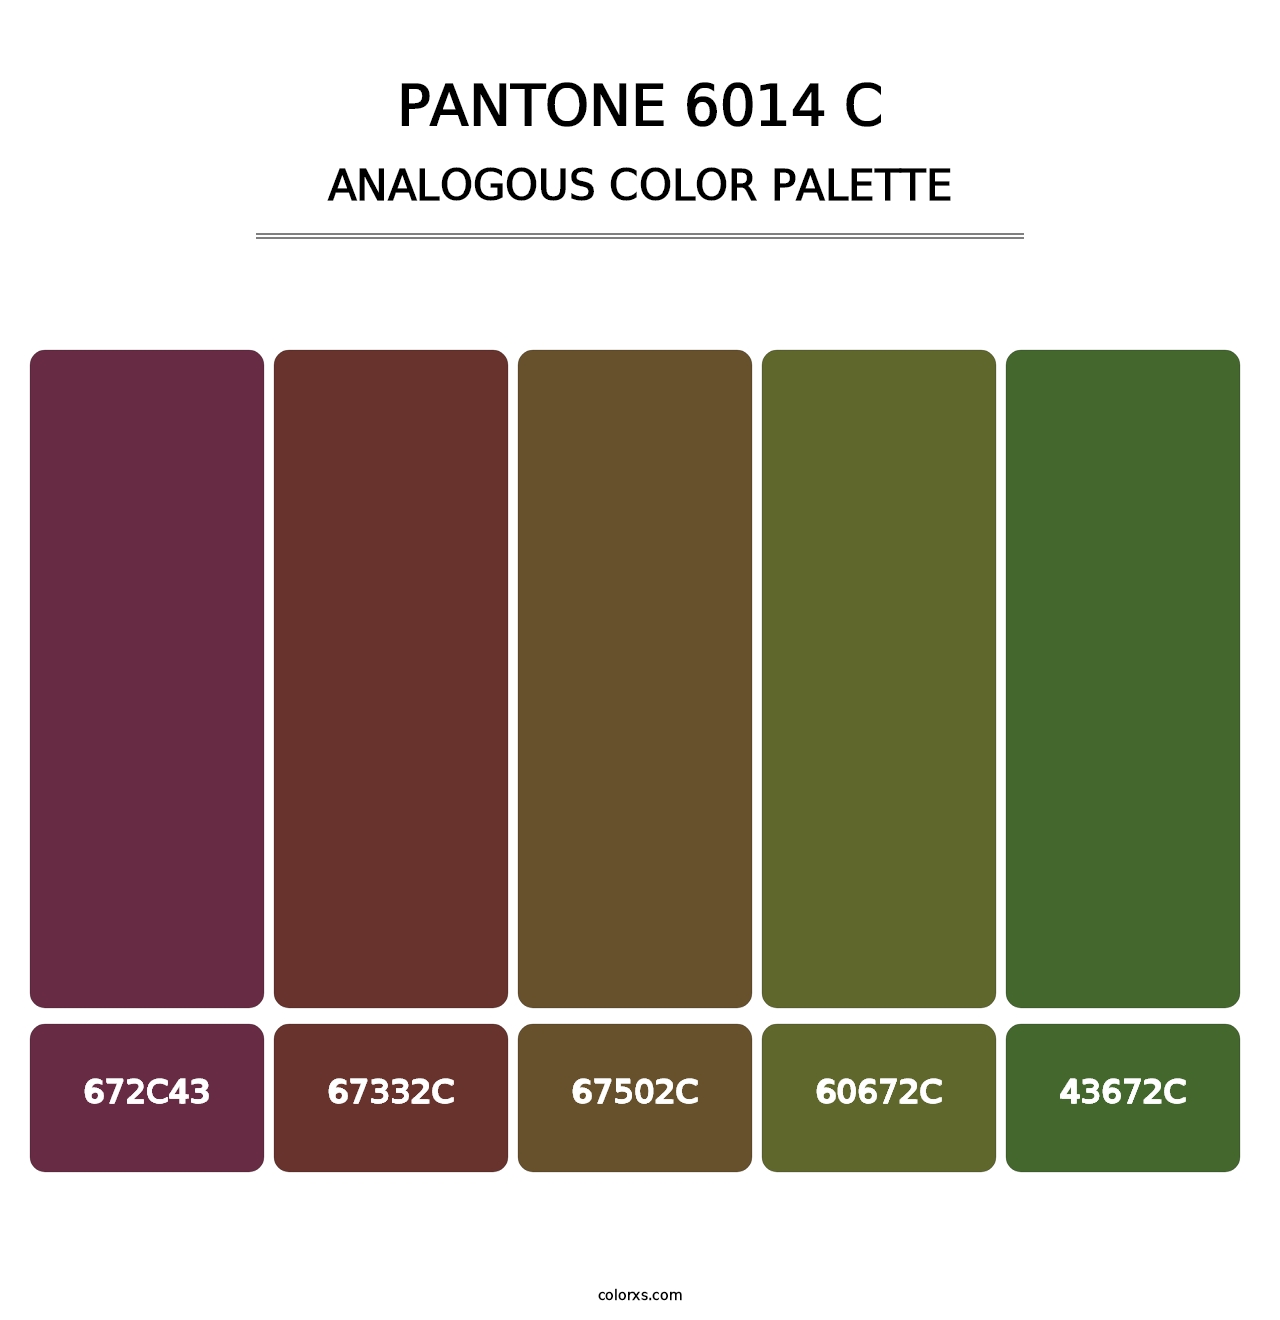 PANTONE 6014 C - Analogous Color Palette